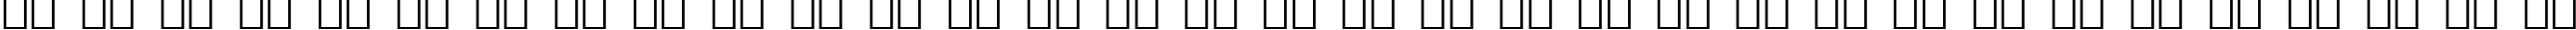 Пример написания русского алфавита шрифтом Chancera Bold